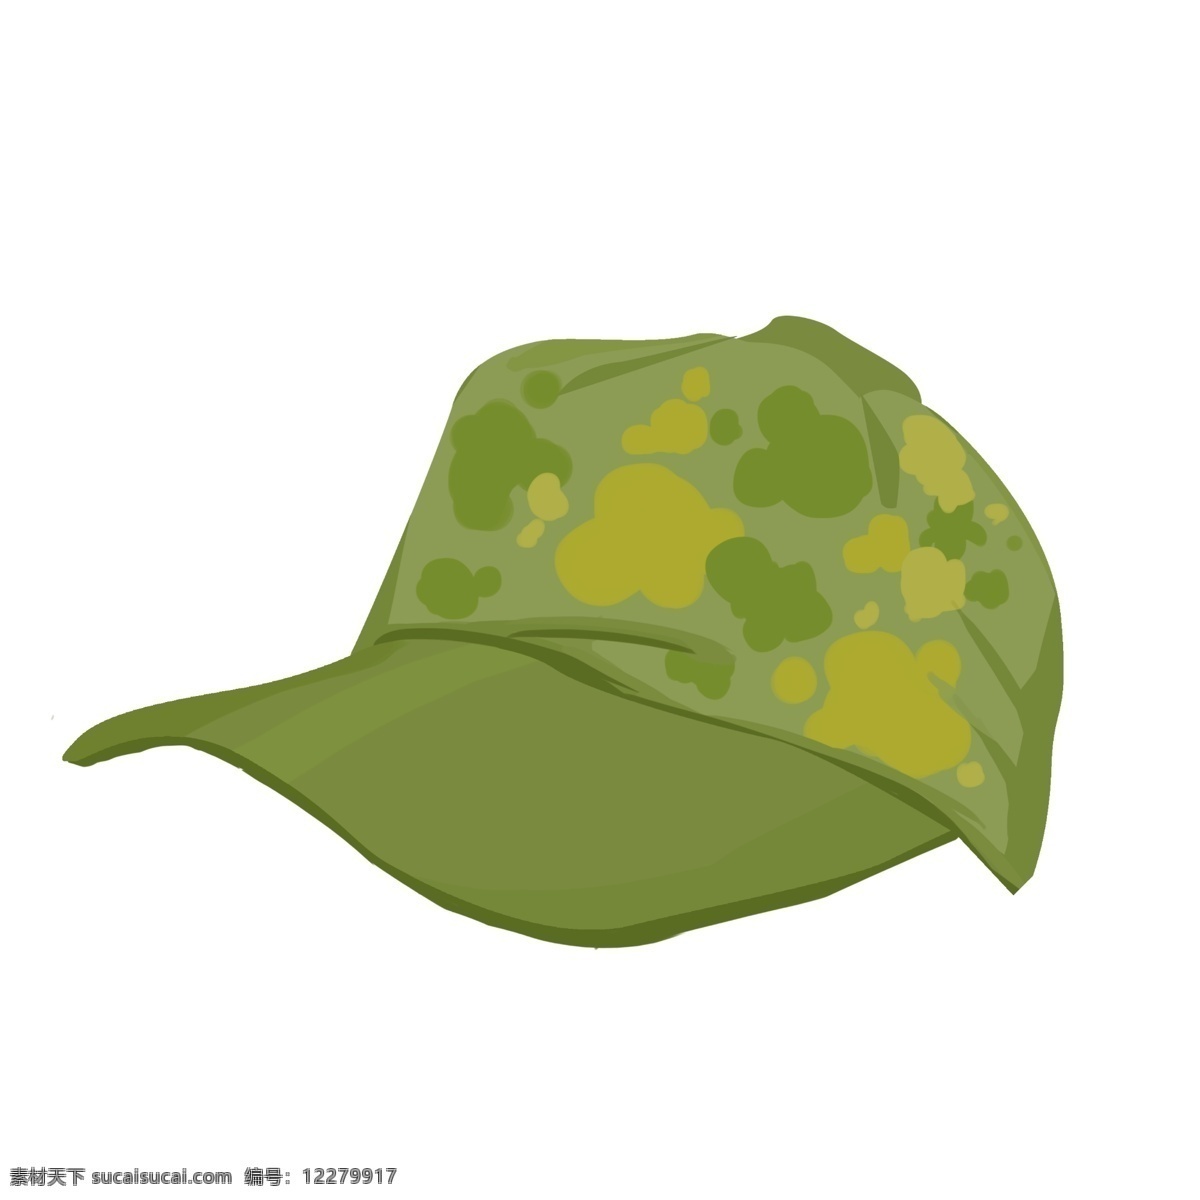 迷彩 军事 帽子 插图 军事帽子 帅气的帽子 夏季帽子 棒球帽子 遮阳帽子 迷彩帽子 鸭舌帽自 运动帽子